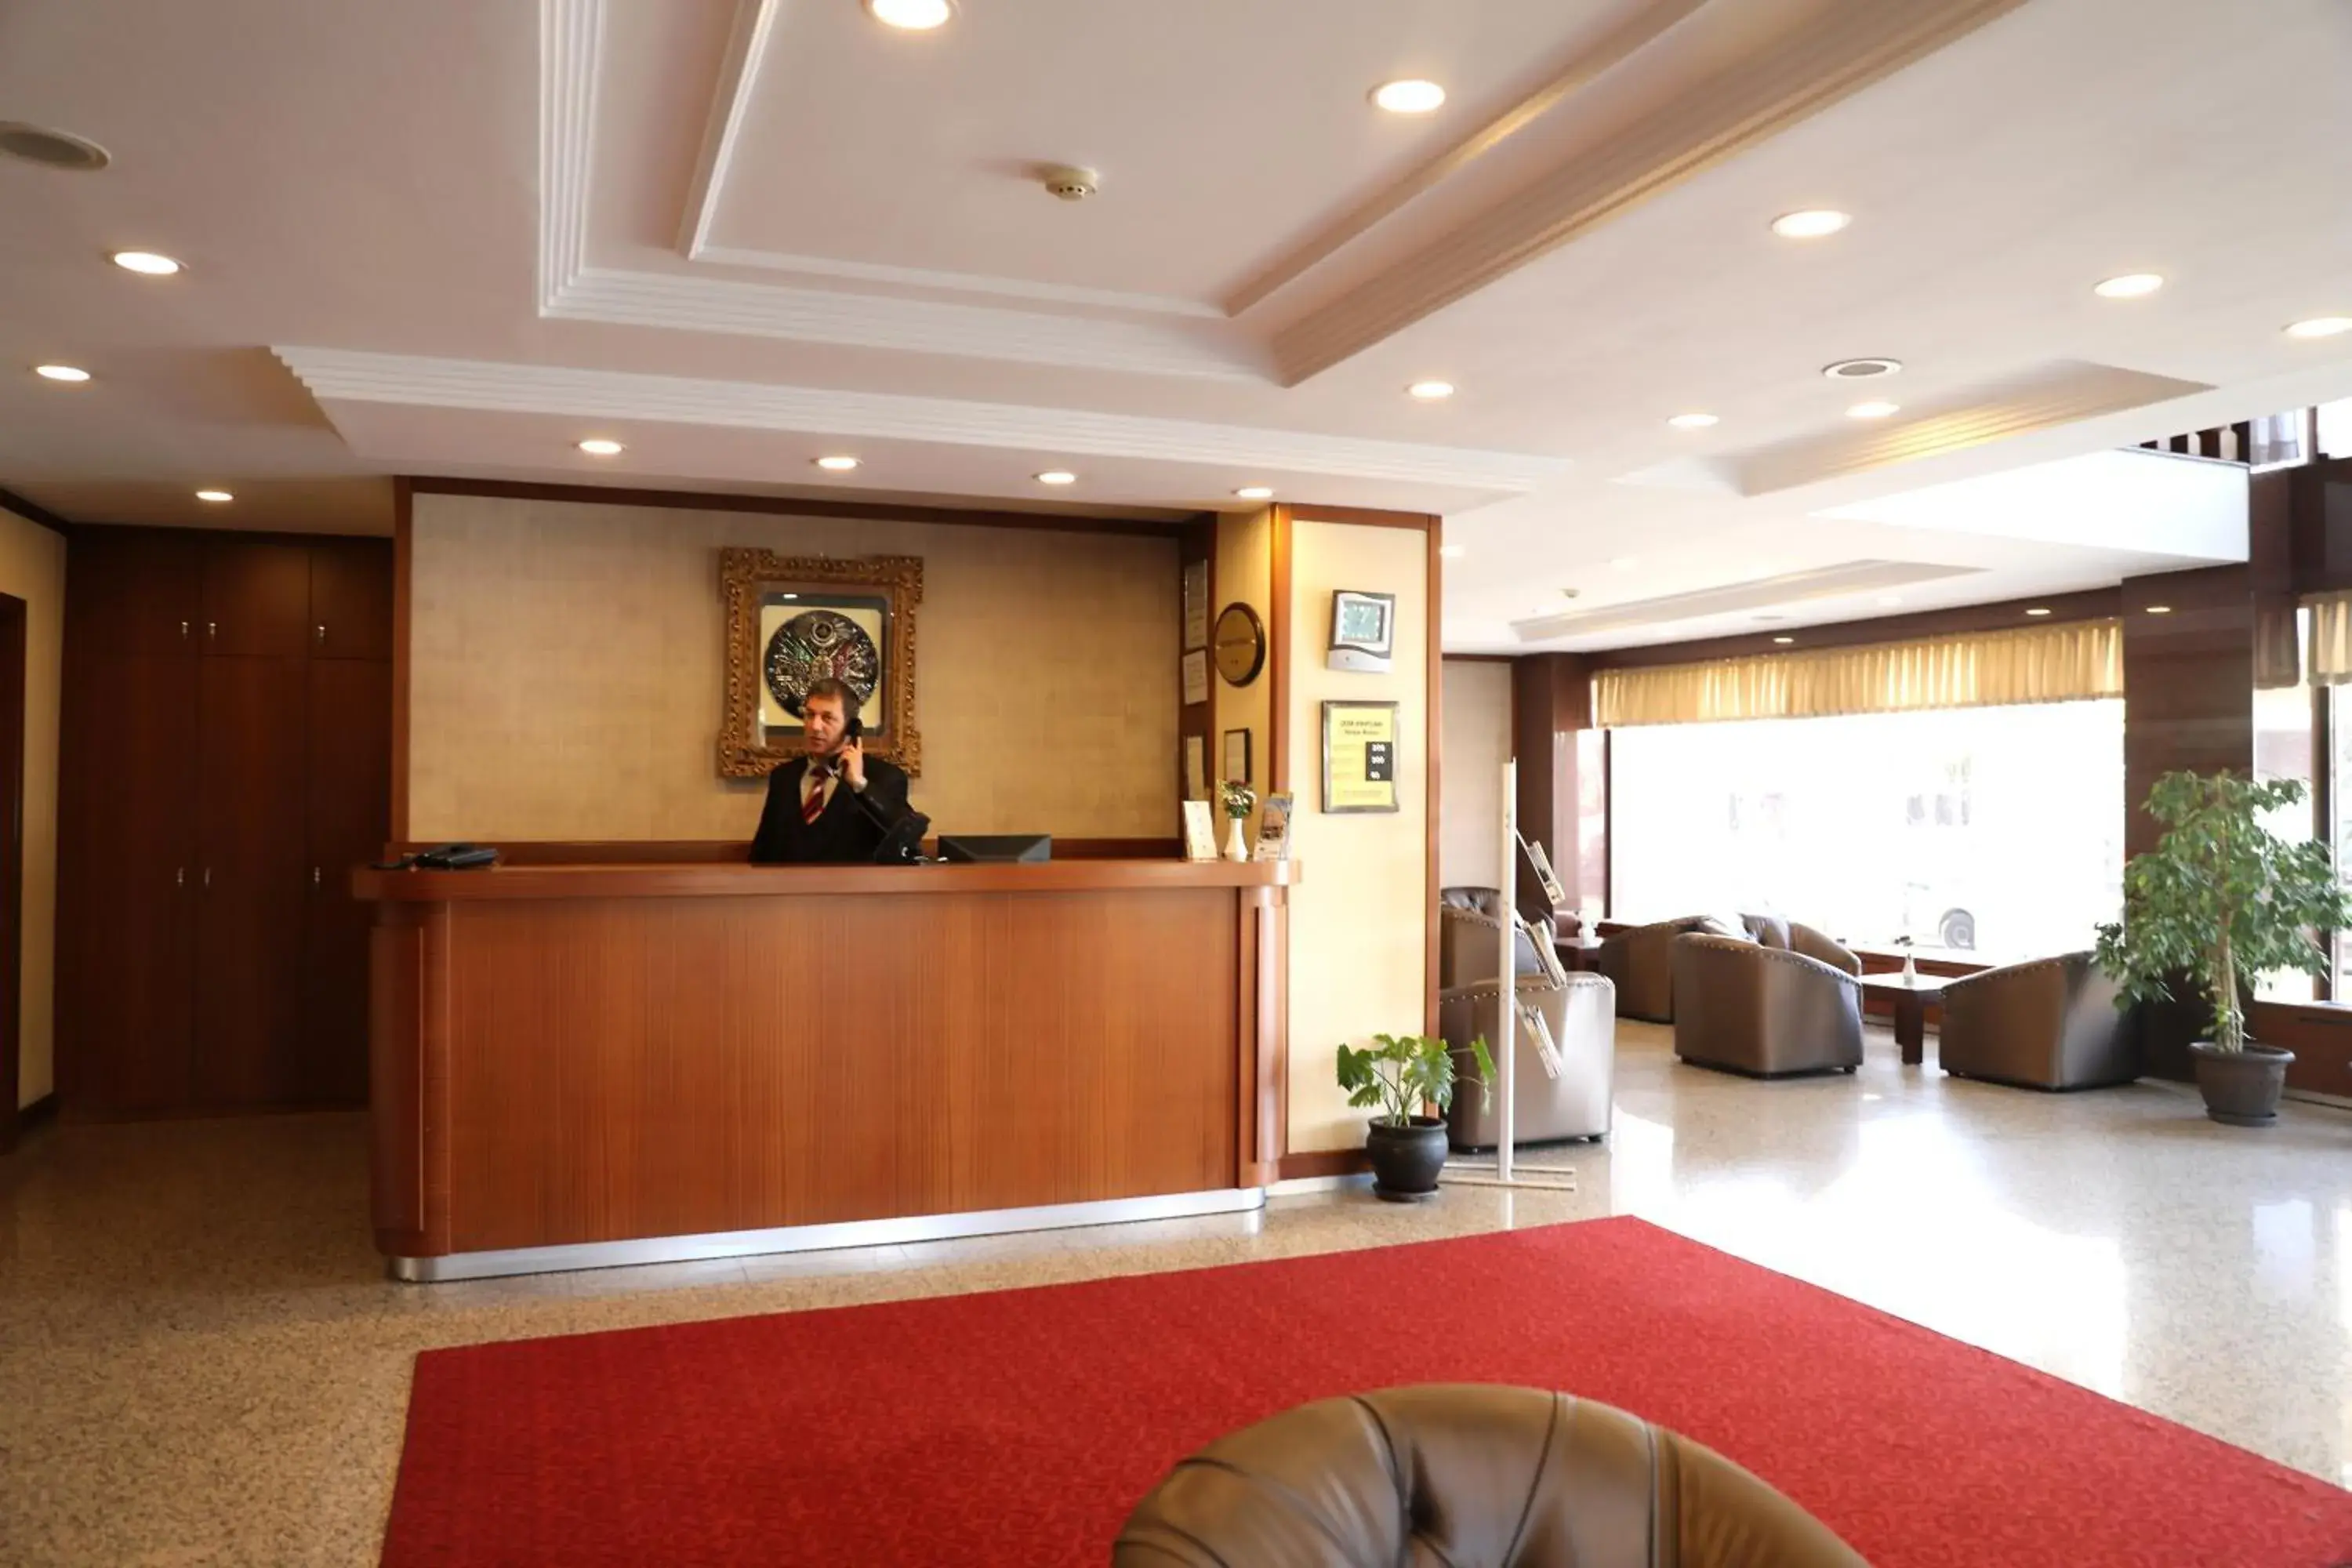 Lobby or reception, Lobby/Reception in Yavuz Hotel